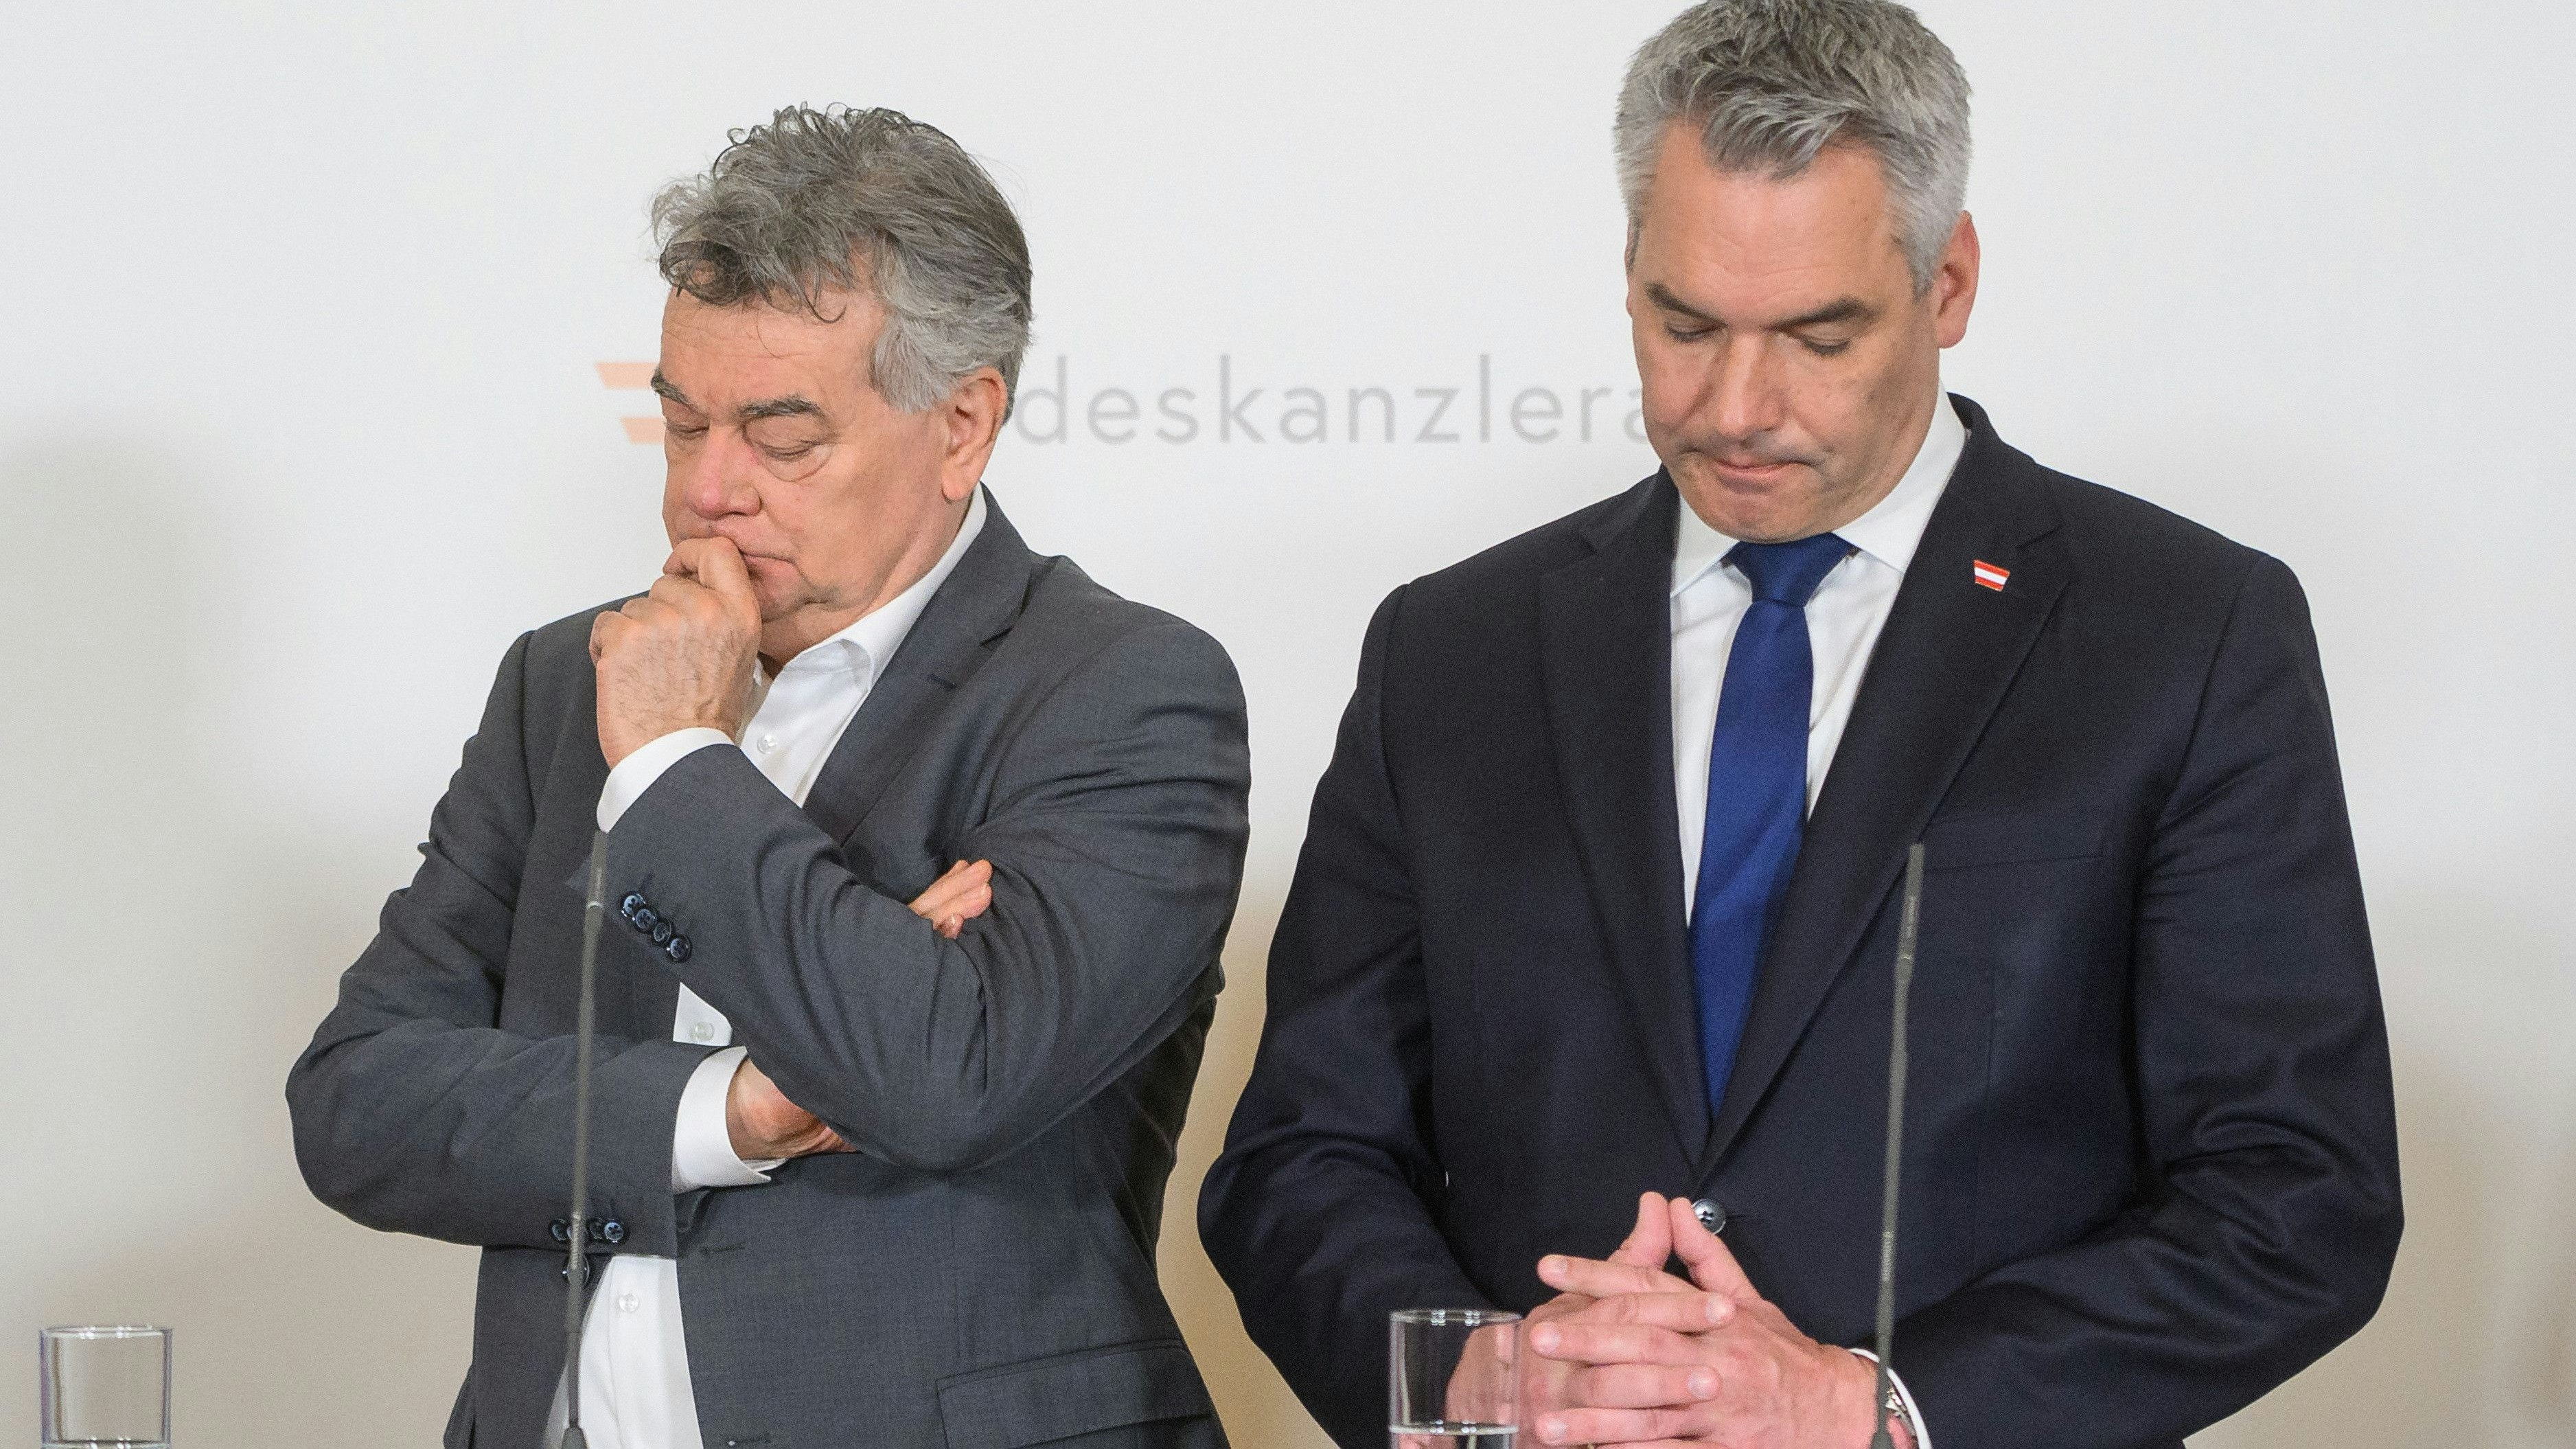 Die Grünen von Vizekanzler Werner Kogler sind für die generelle Sommerzeit, die ÖVP Bundeskanzler Karl Nehammer will die Zeitumstellung abschaffen